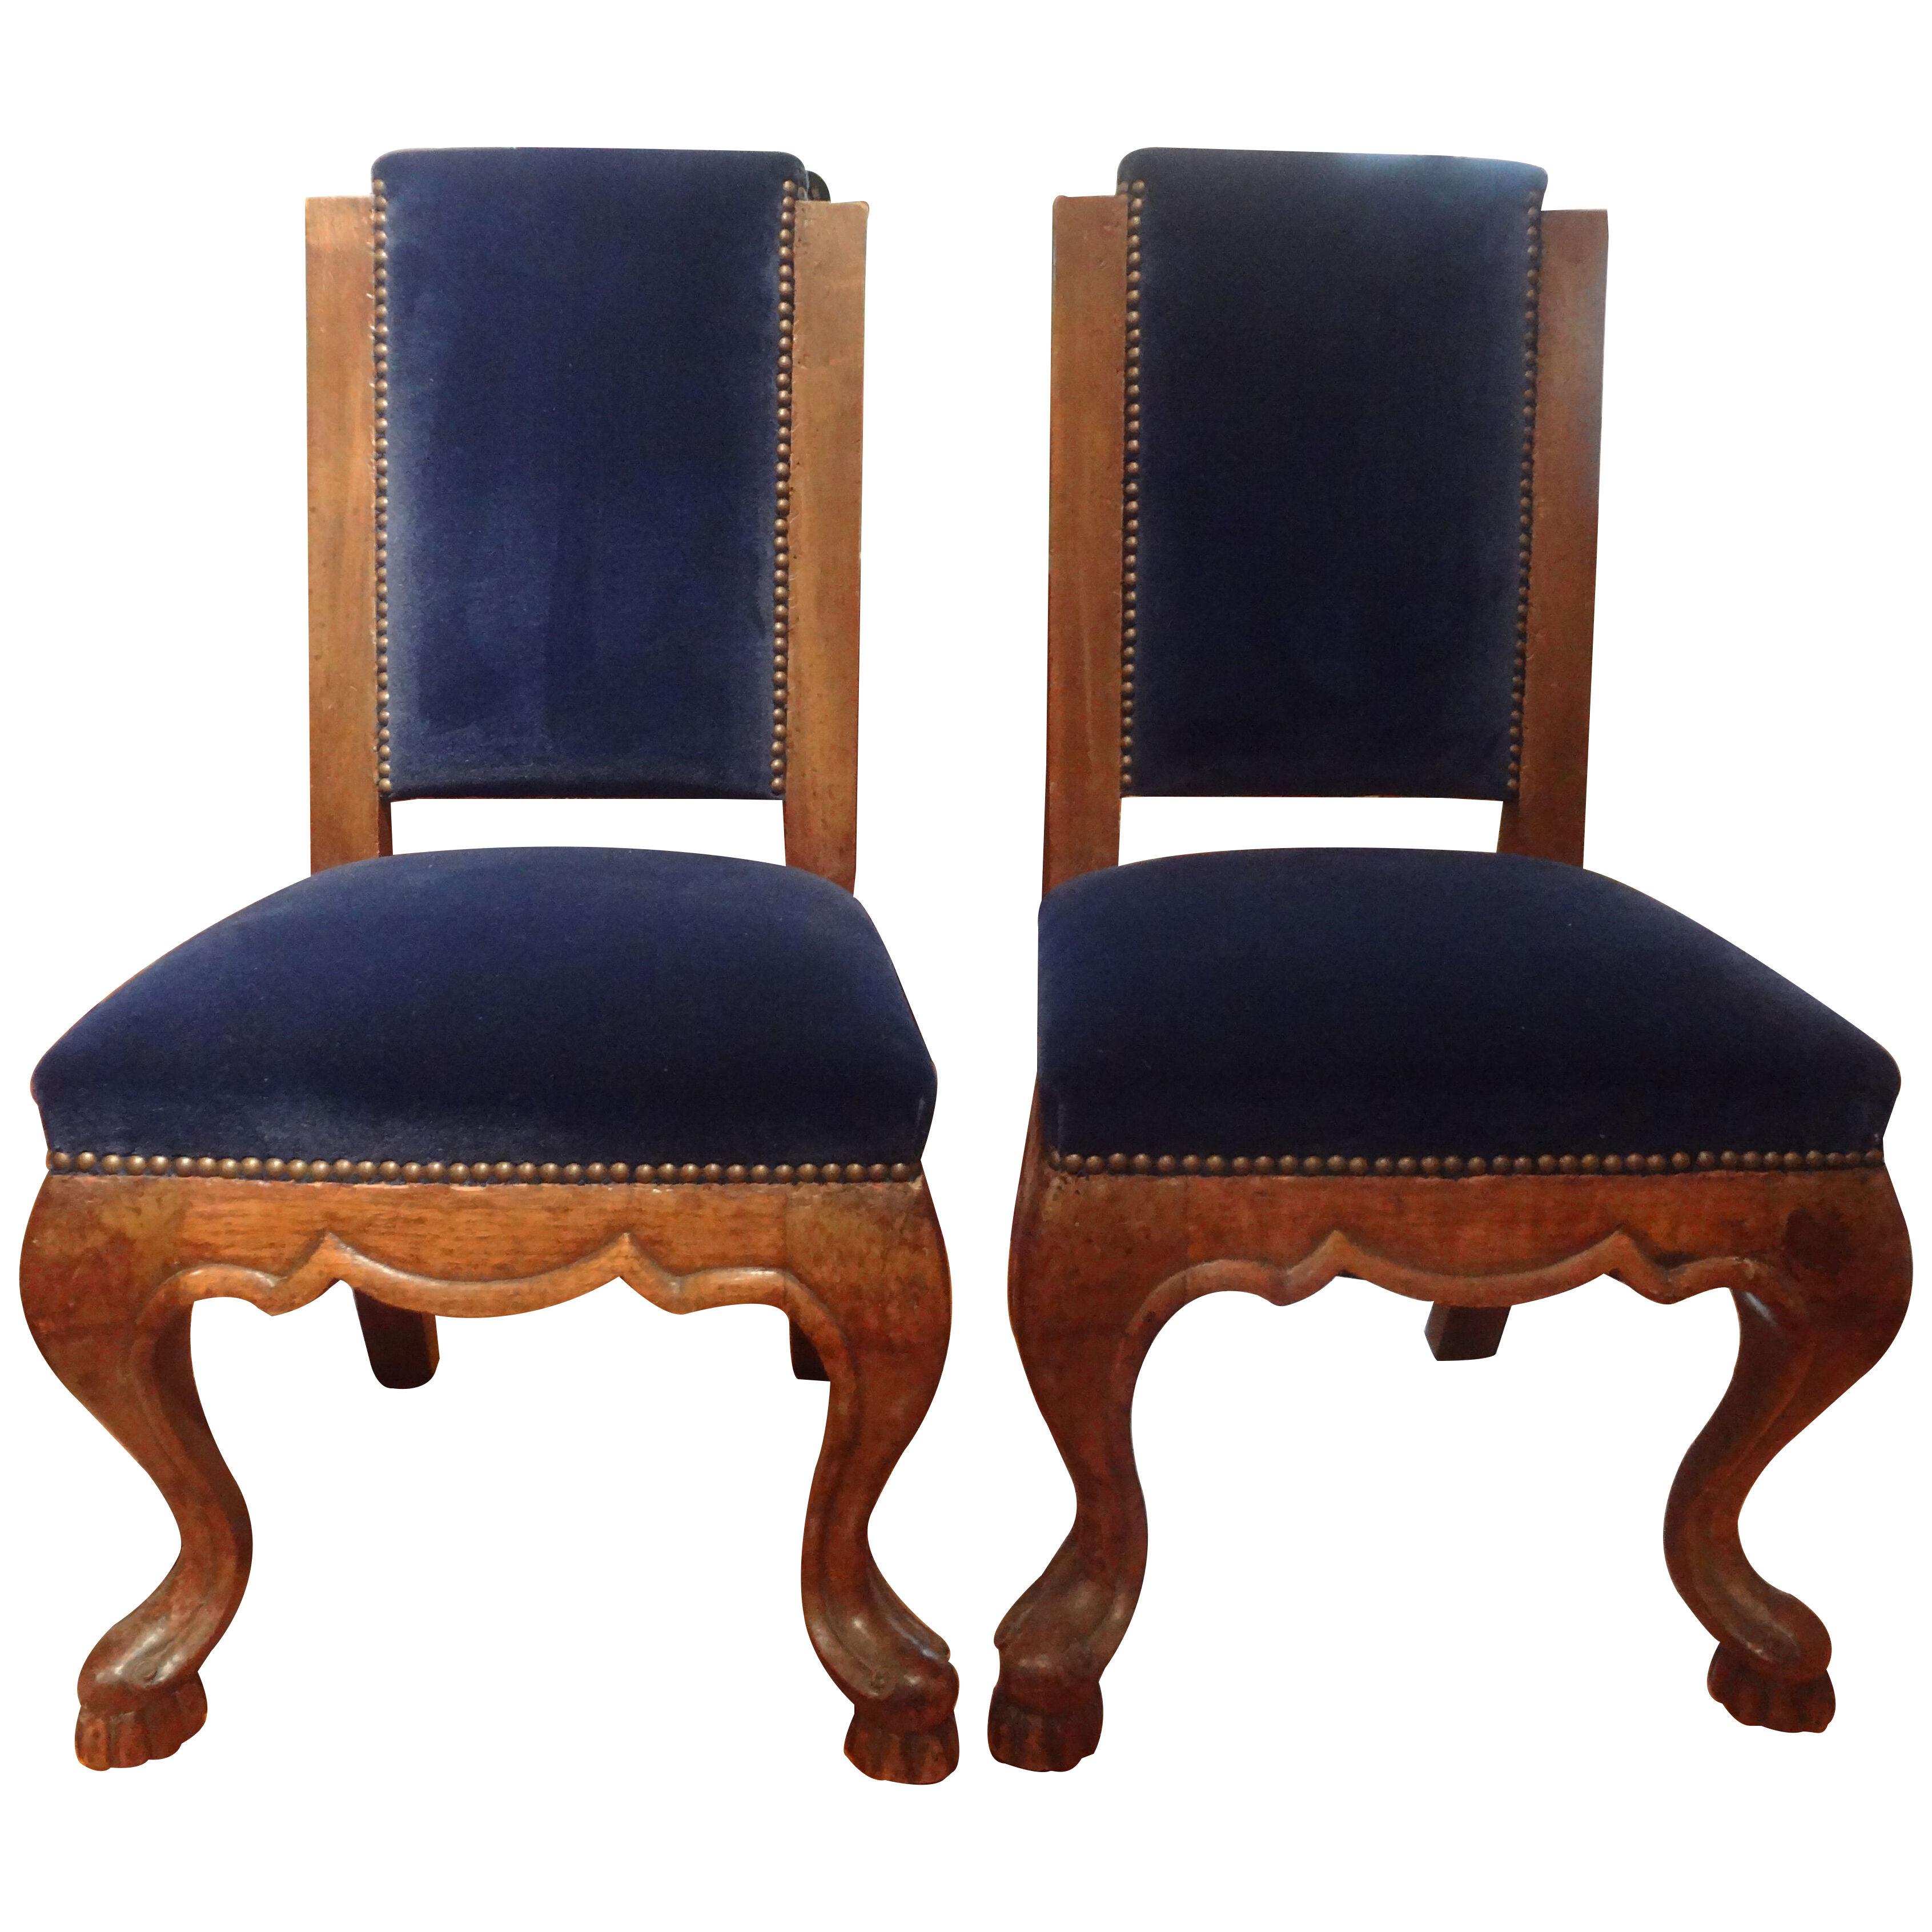 Pair Of 19th Century Italian Walnut Children's Chairs